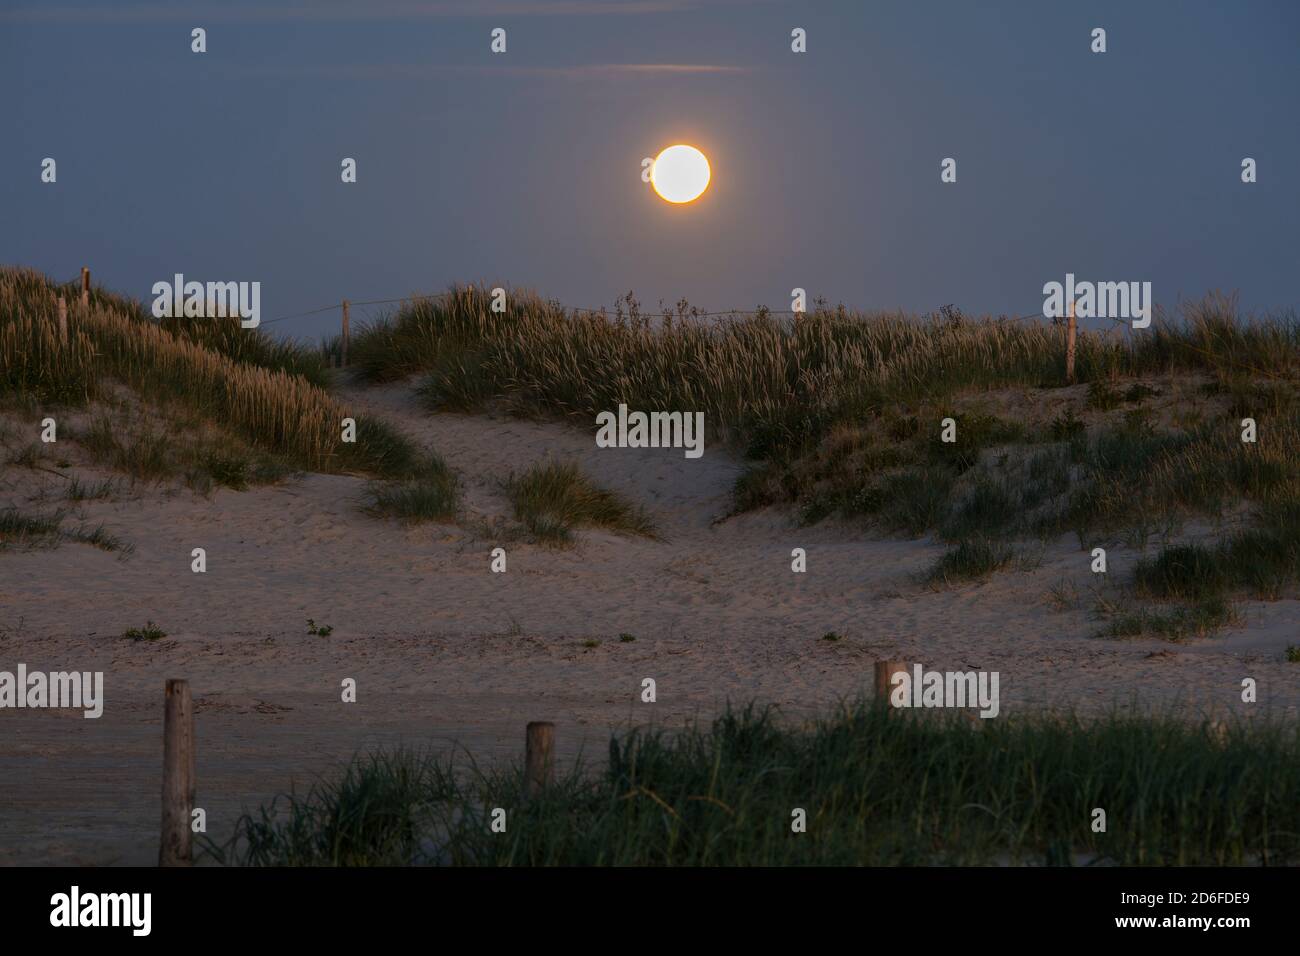 Sankt Peter Ording, paysage de dunes, dunes, lune, lune Banque D'Images